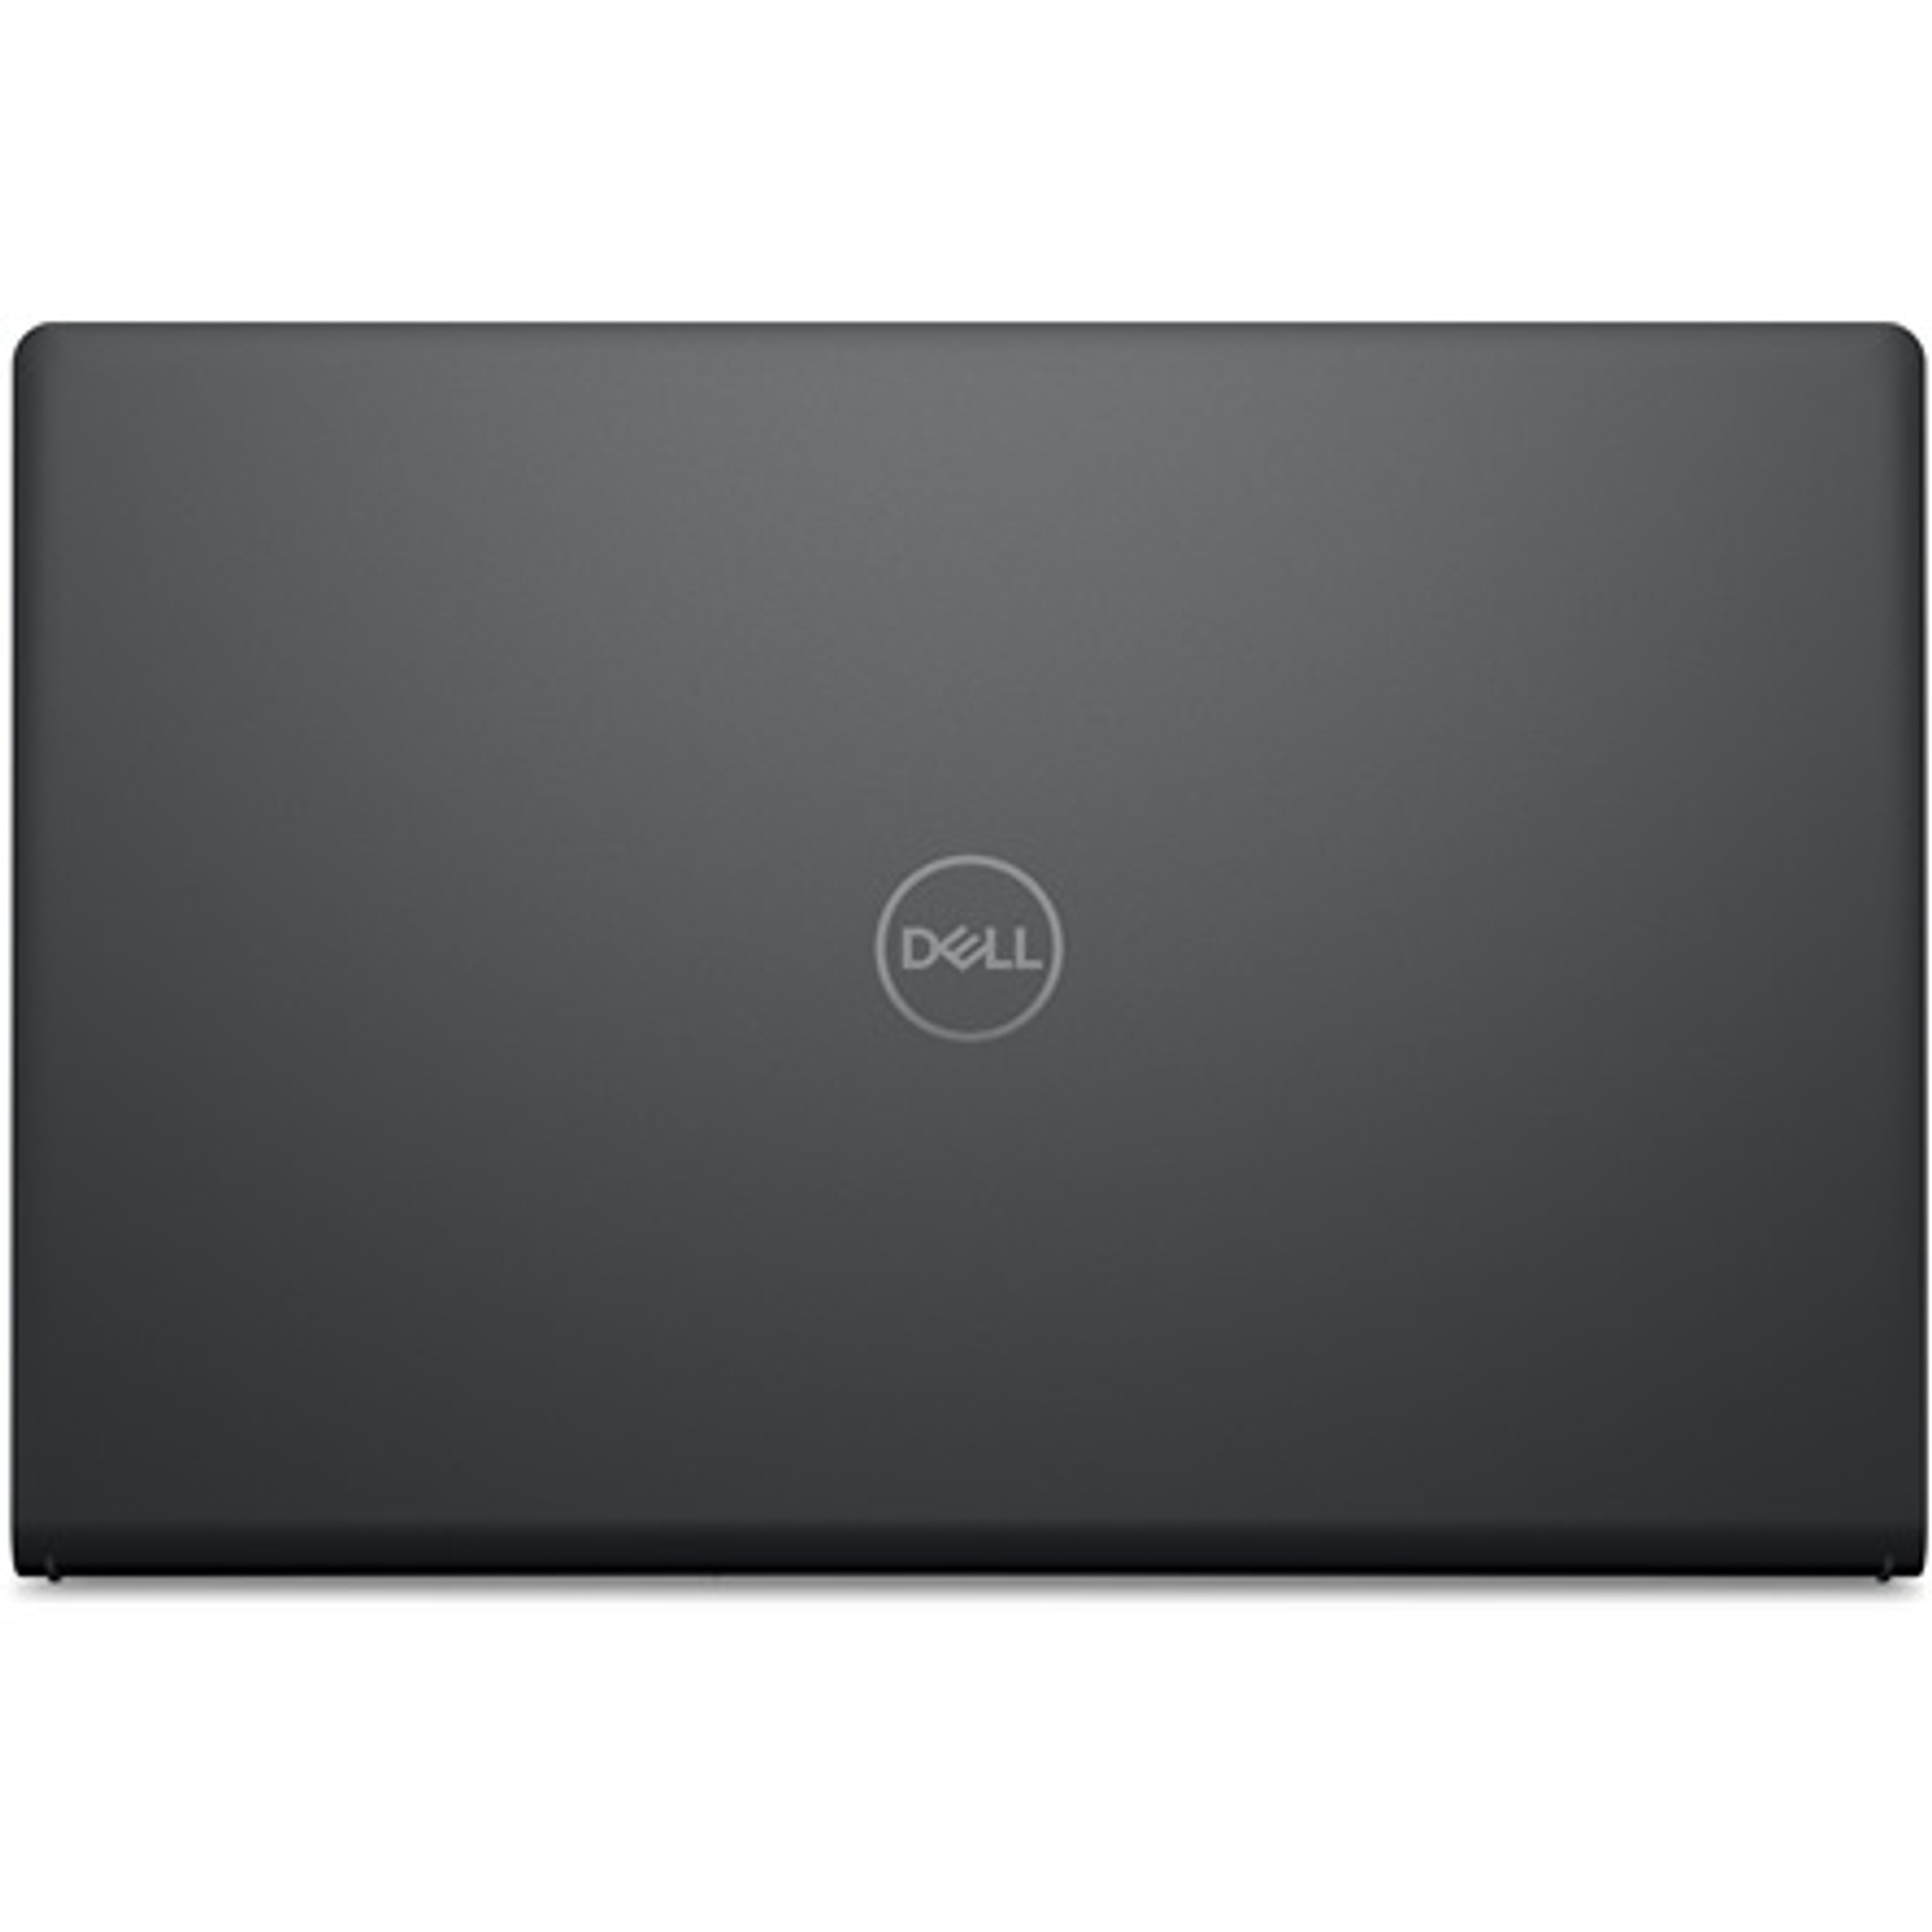 DELL V3510-61 Laptop / Notebook 5